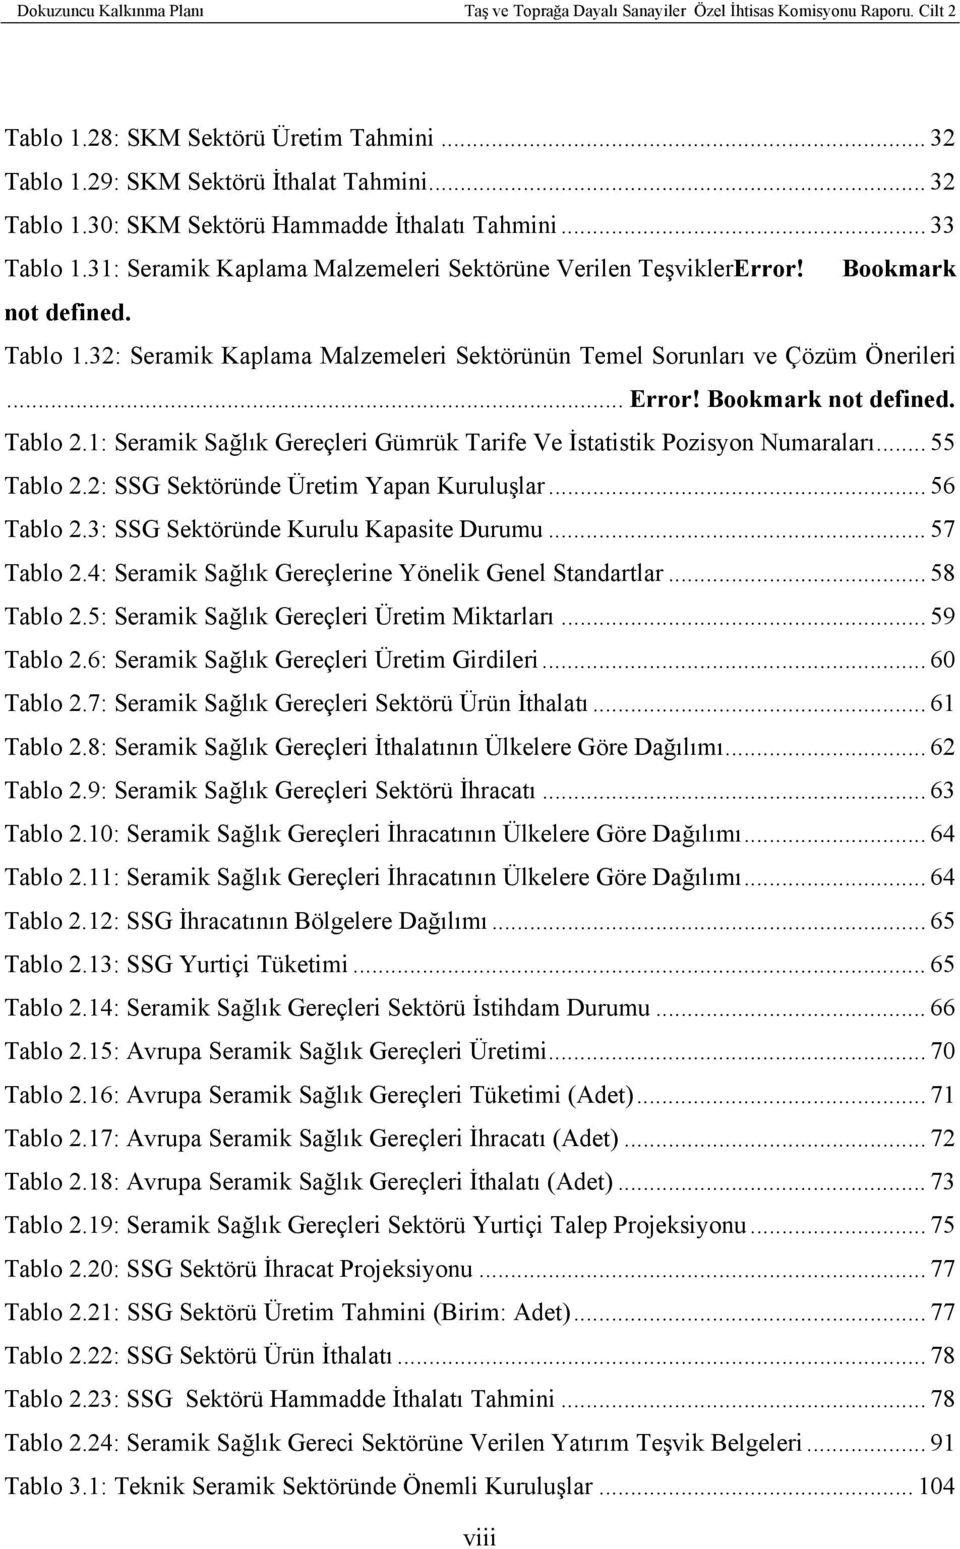 Bookmark not defined. Tablo 2.1: Seramik Sağlık Gereçleri Gümrük Tarife Ve İstatistik Pozisyon Numaraları... 55 Tablo 2.2: SSG Sektöründe Üretim Yapan Kuruluşlar... 56 Tablo 2.